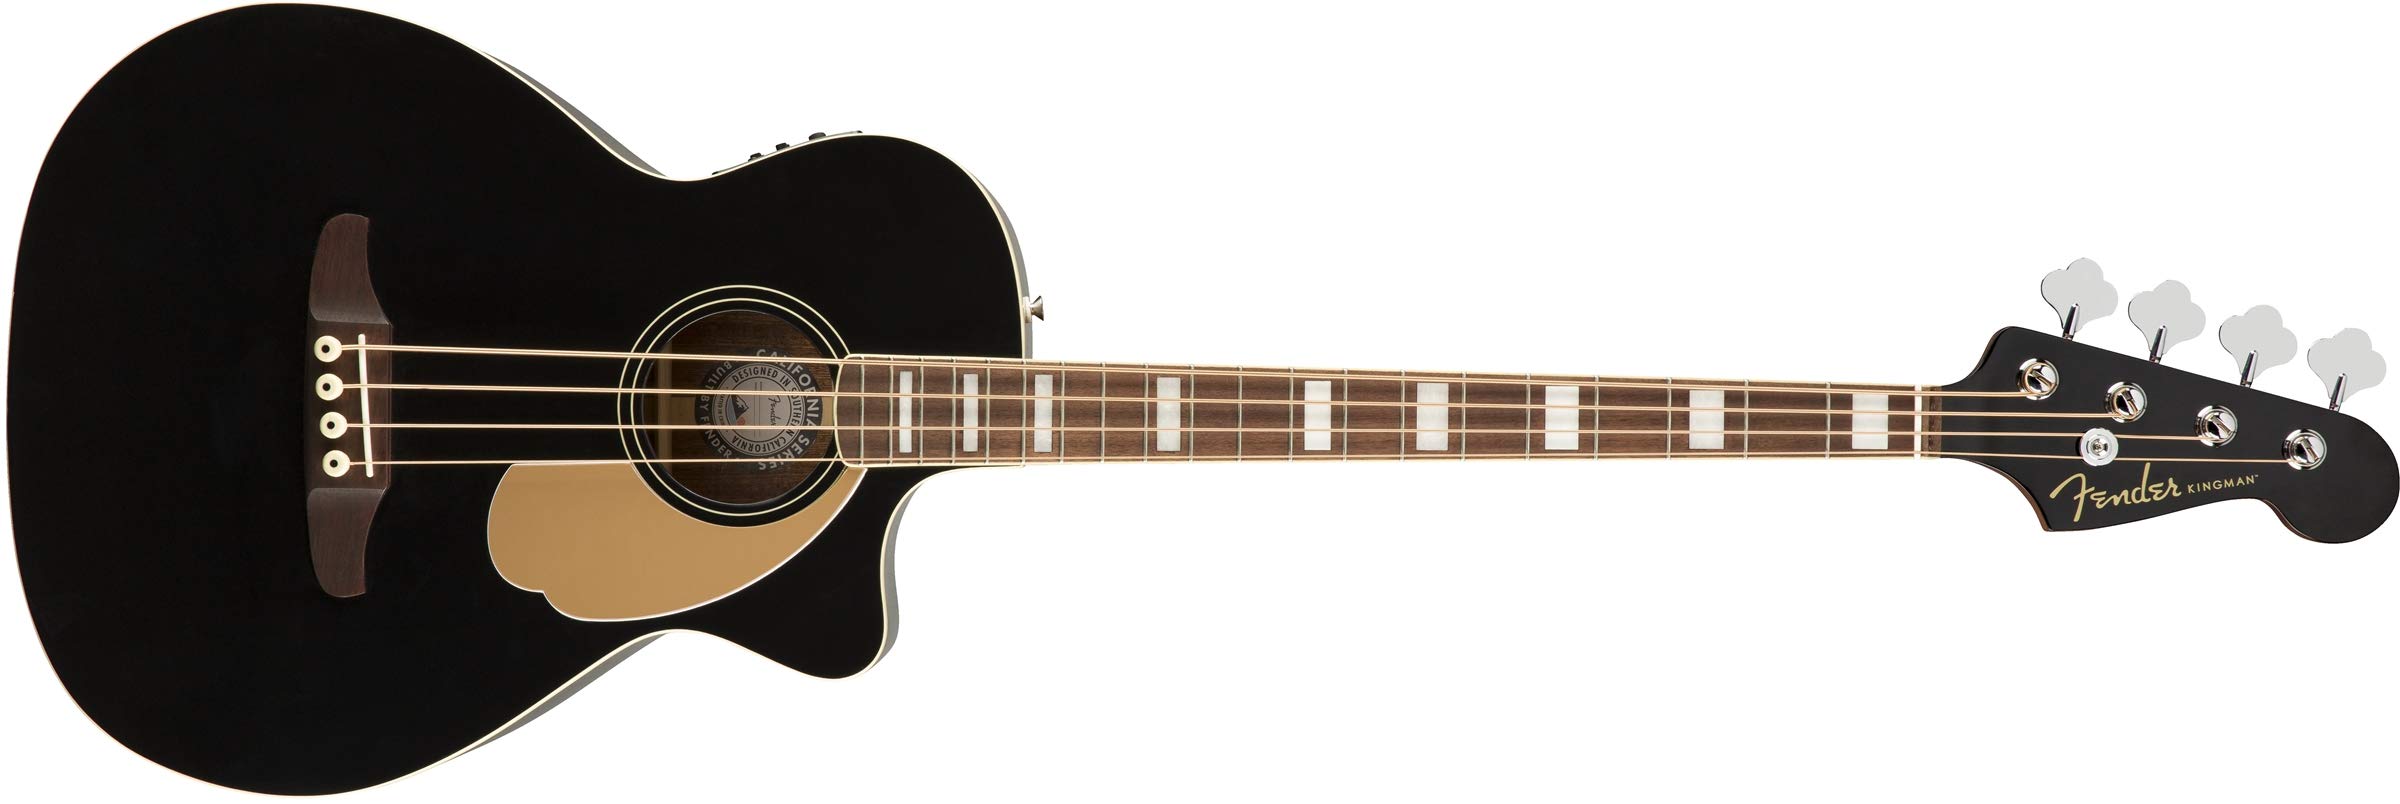 Fender Baixo acústico Kingman (V2) - preto - com bolsa ...